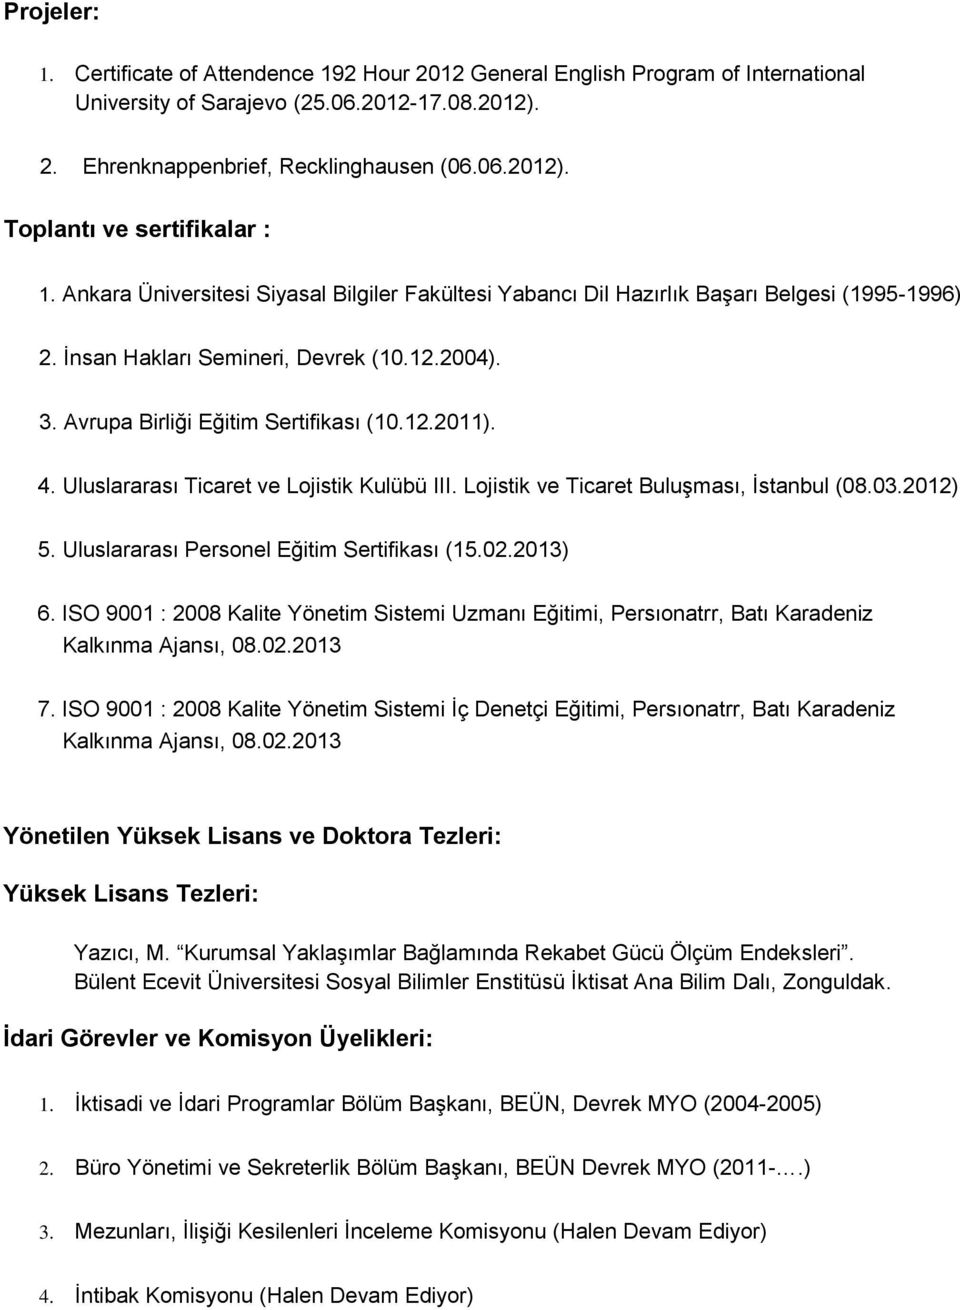 Uluslararası Ticaret ve Lojistik Kulübü III. Lojistik ve Ticaret Buluşması, İstanbul (08.03.2012) 5. Uluslararası Personel Eğitim Sertifikası (15.02.2013) 6.